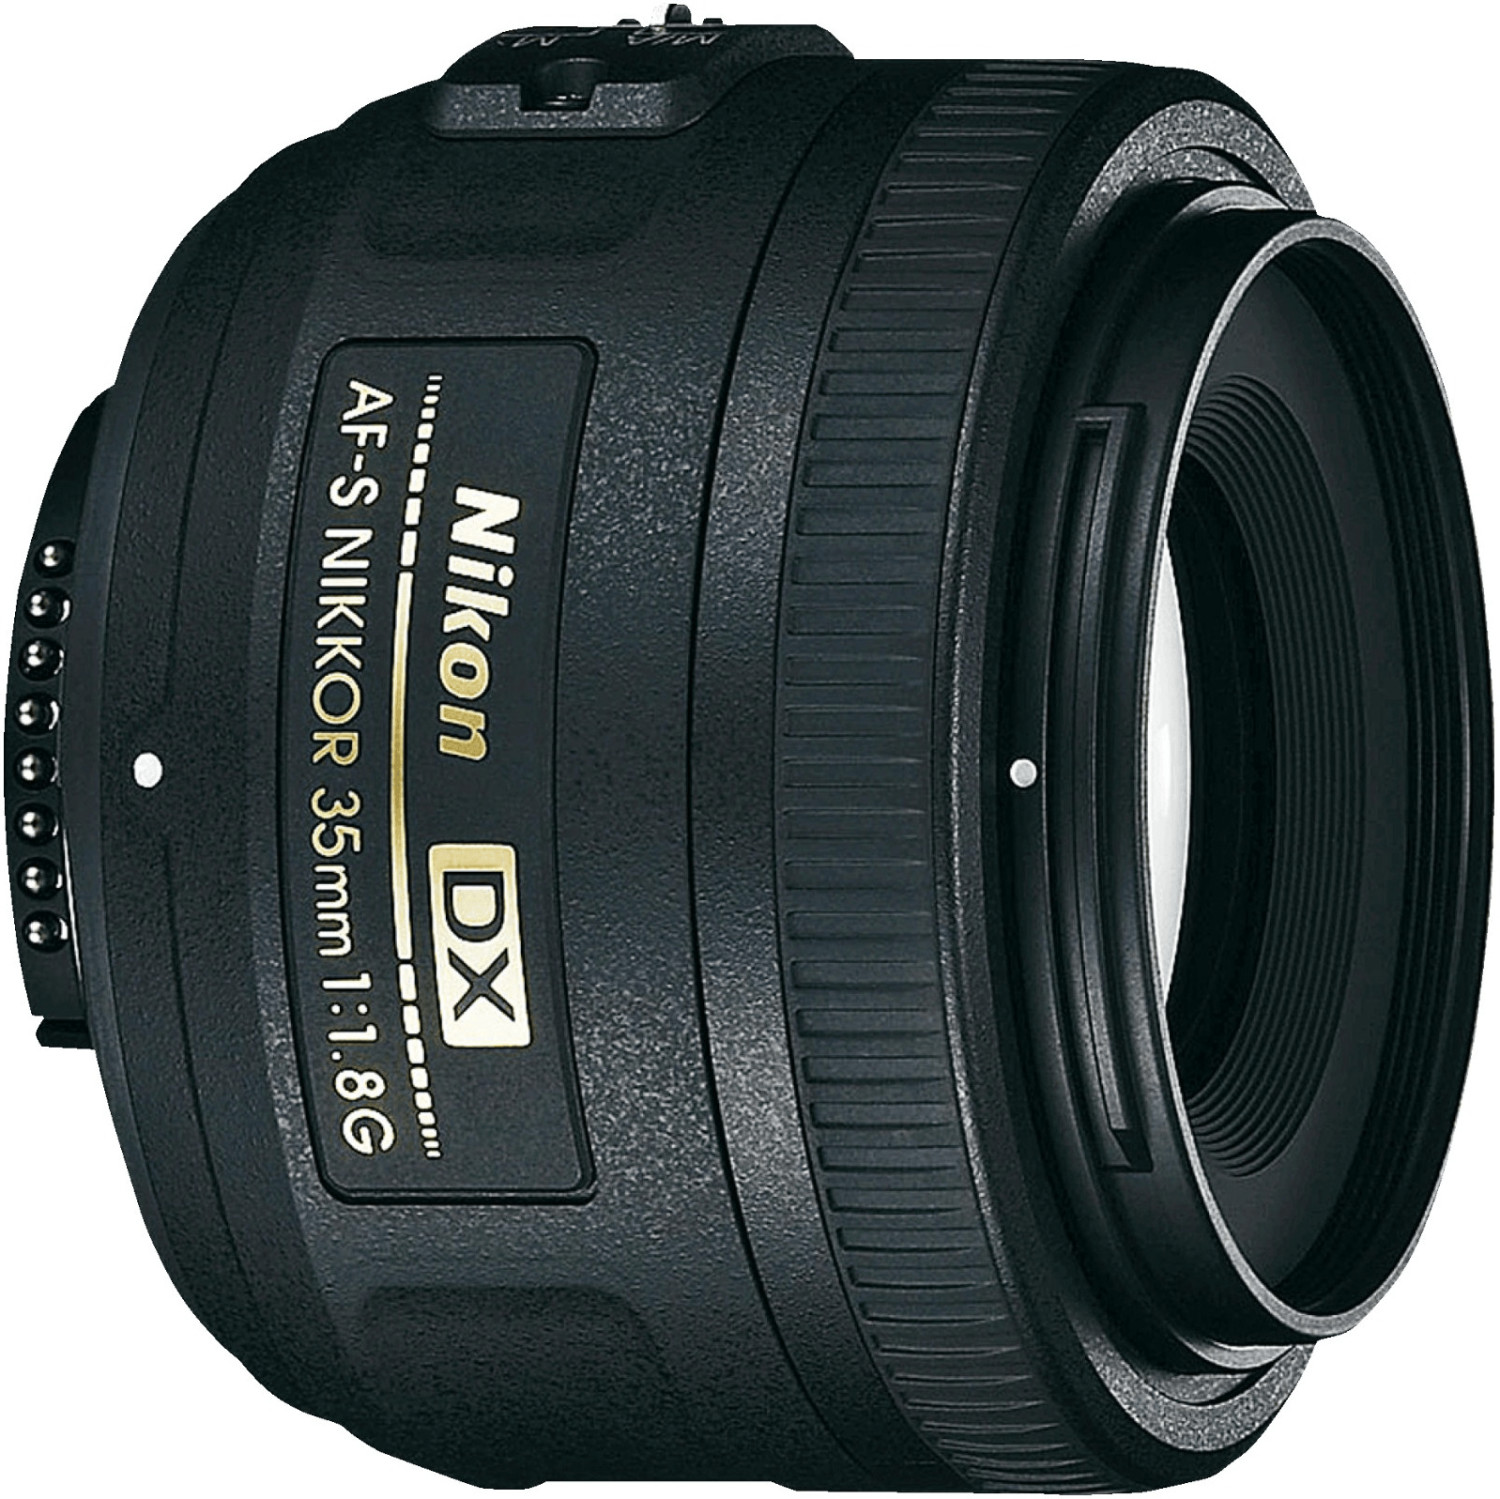 Buy Nikon 35mm f/1.8G AF-S DX Nikkor from £146.00 (Today) – Best